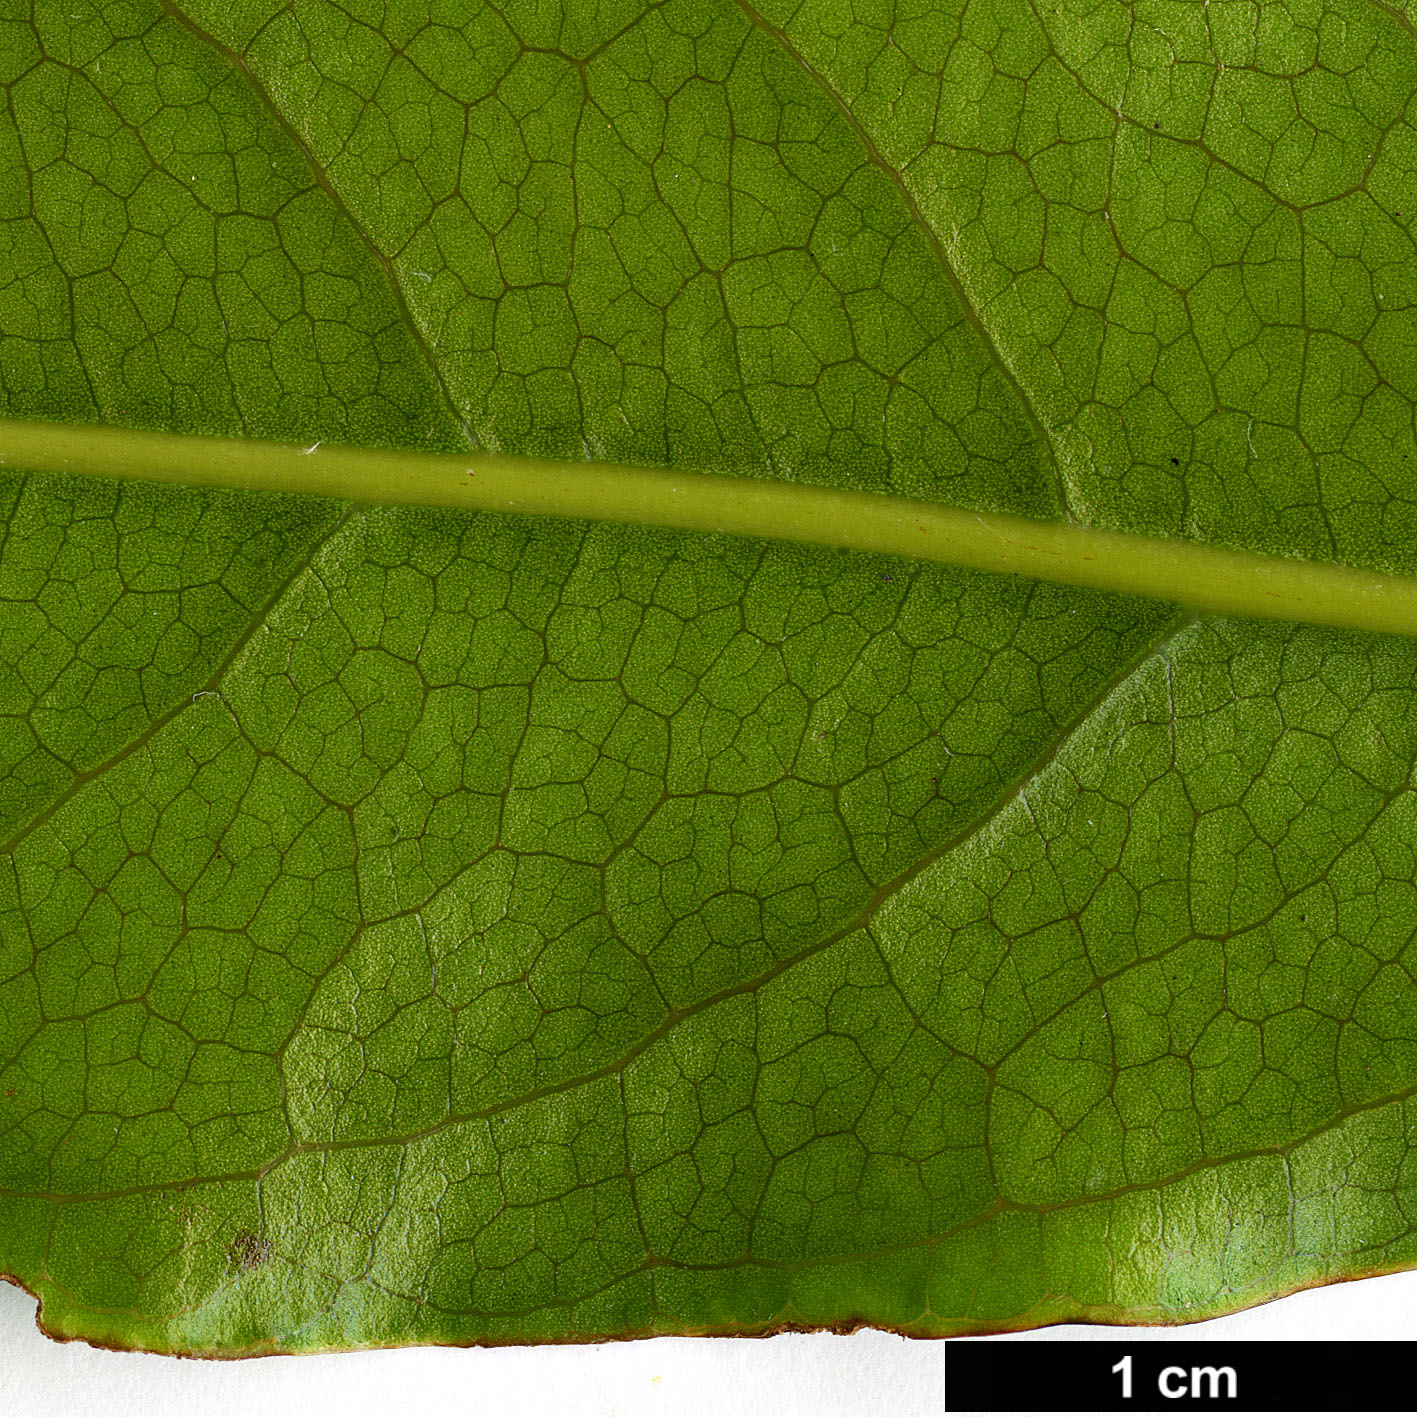 High resolution image: Family: Lauraceae - Genus: Beilschmiedia - Taxon: erythrophloia